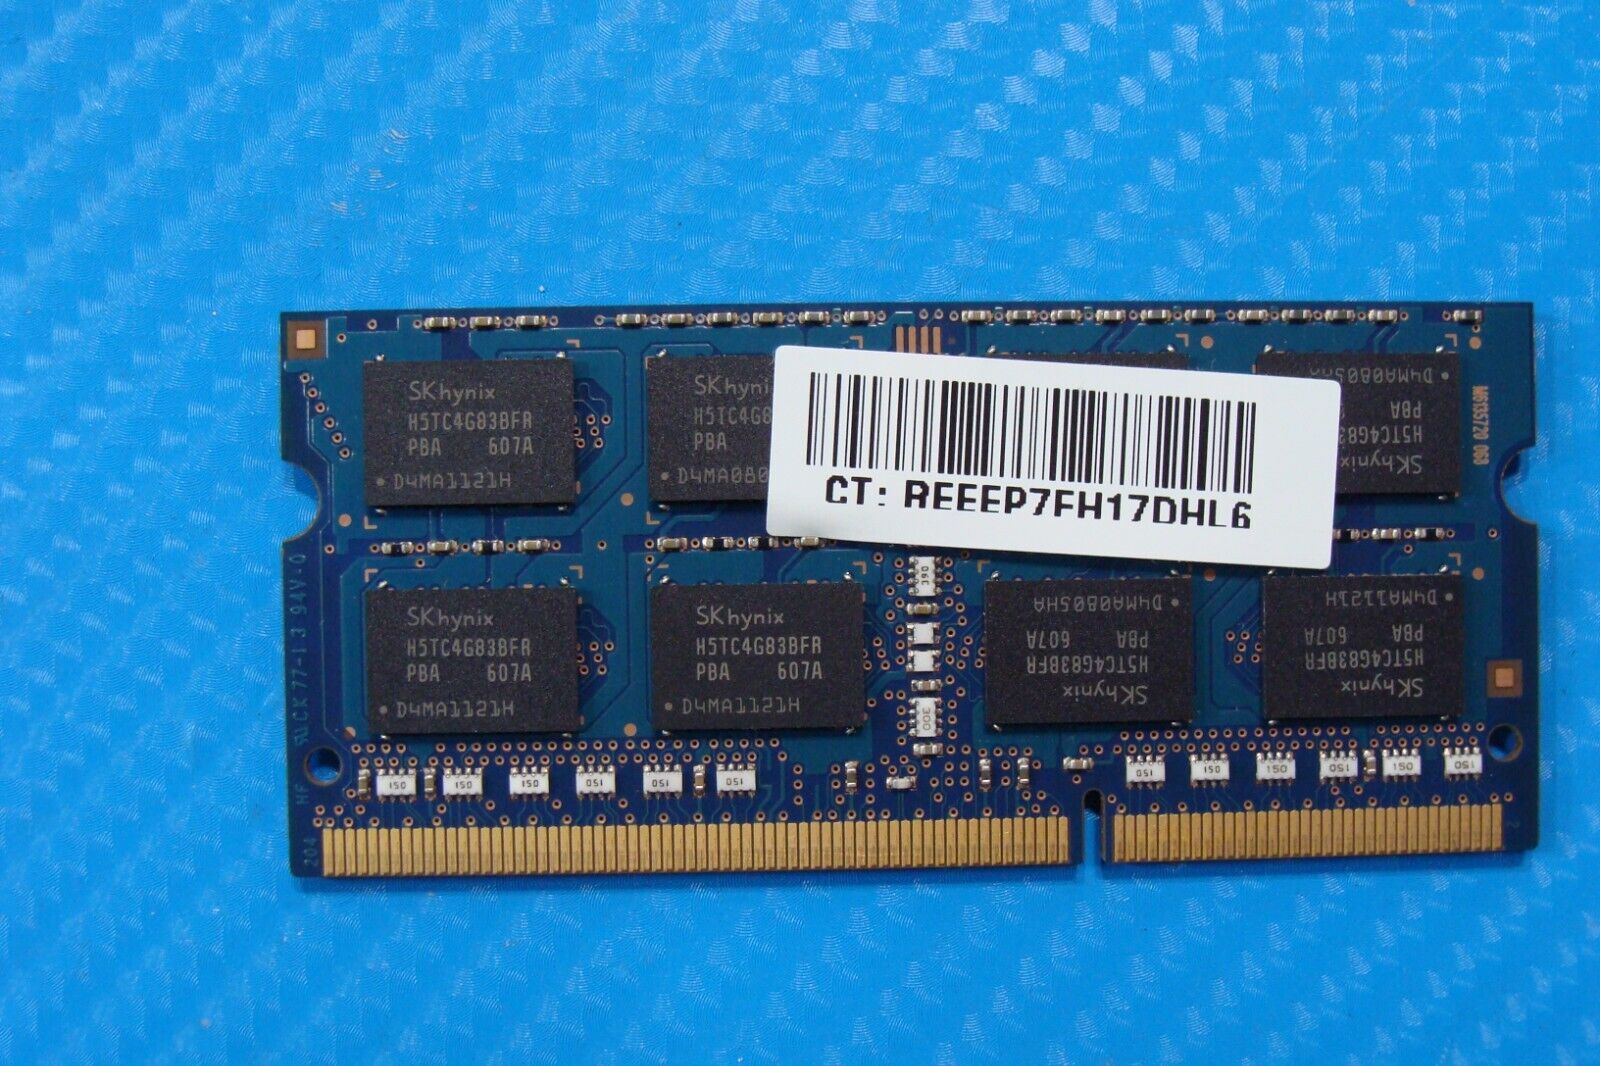 HP 15-an051dx SK Hynix 8GB 2Rx8 PC3L-12800S Memory RAM SO-DIMM HMT41GS6BFR8A-PB